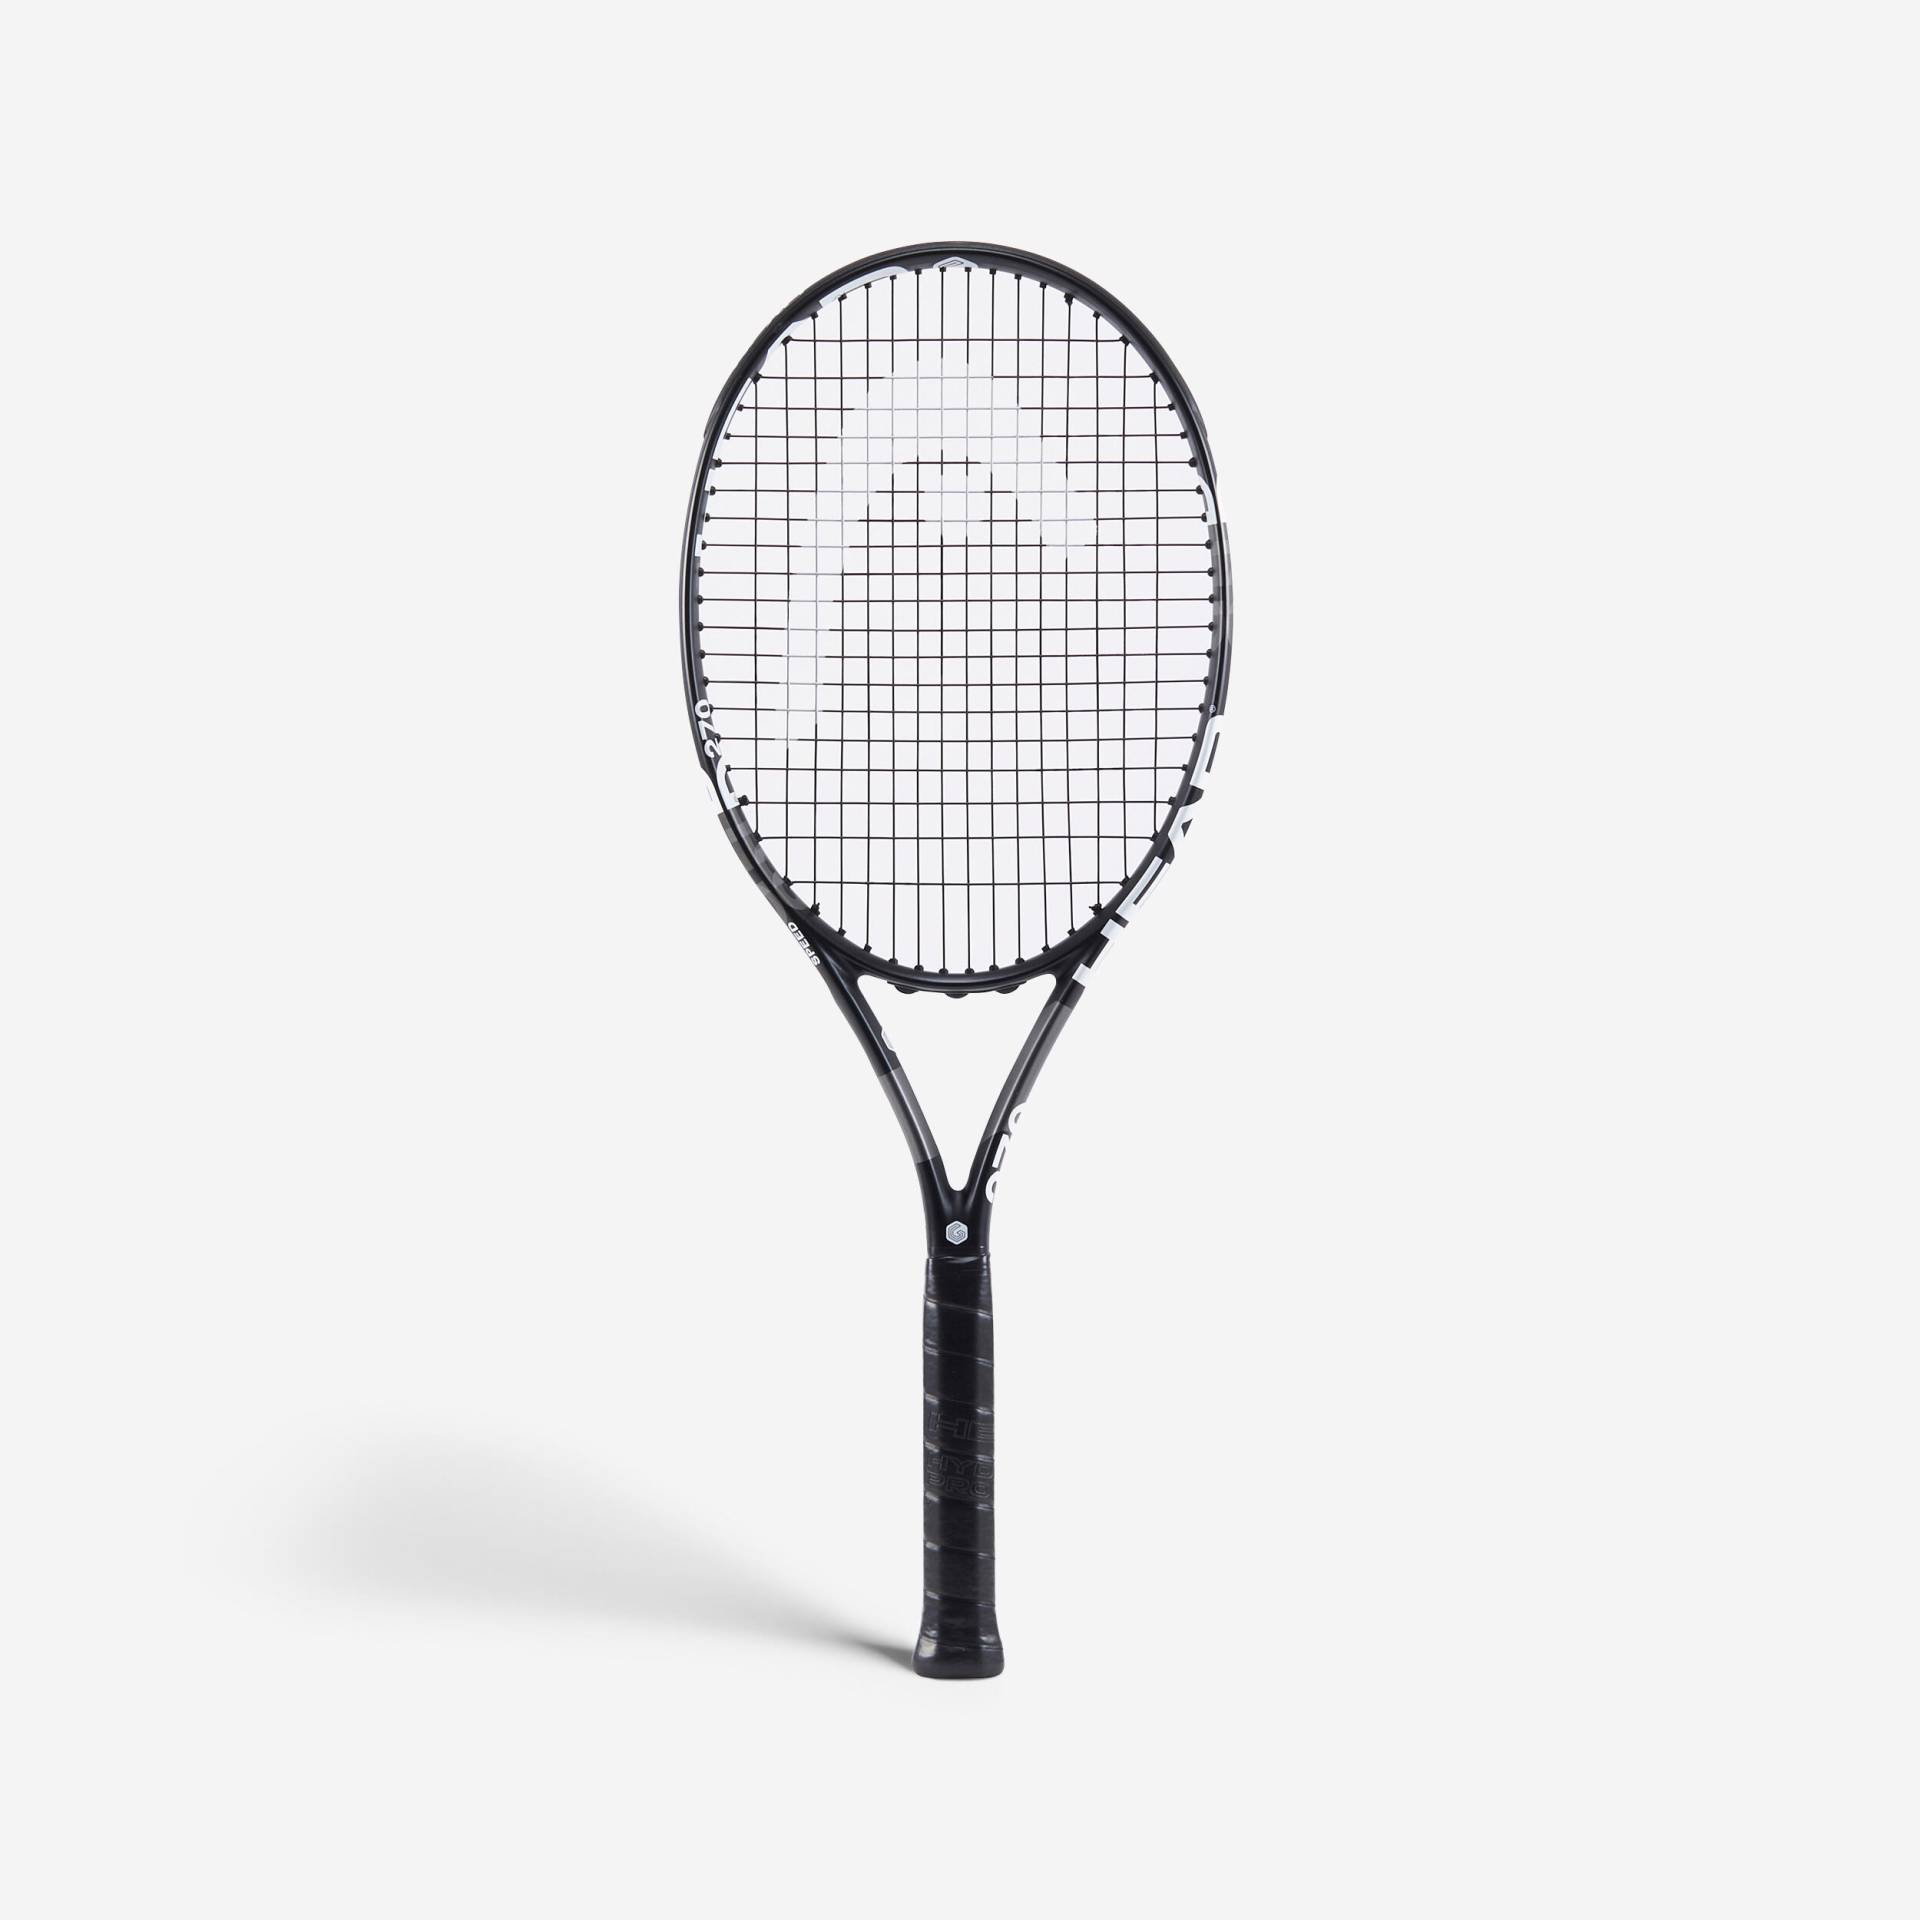 Head Tennisschläger Damen/Herren - Speed GTouch 270 g unbesaitet - inkl. Saite von Head